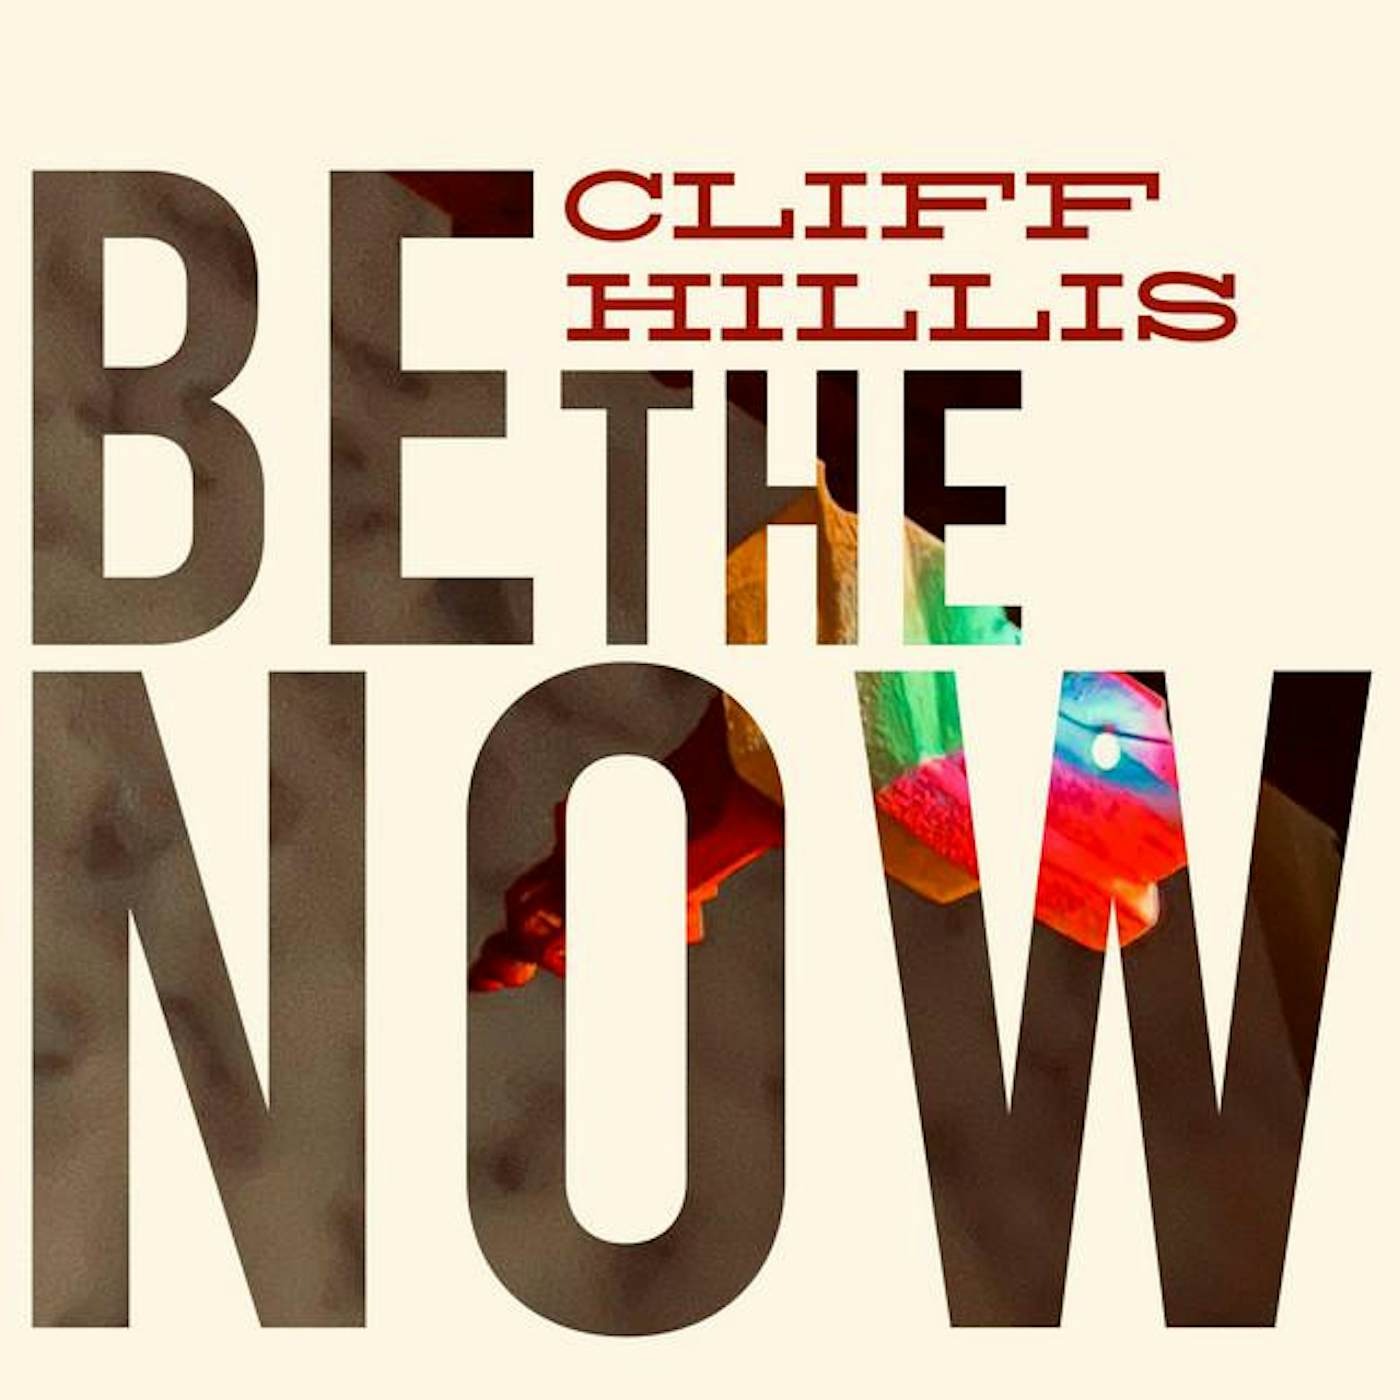 Cliff Hillis